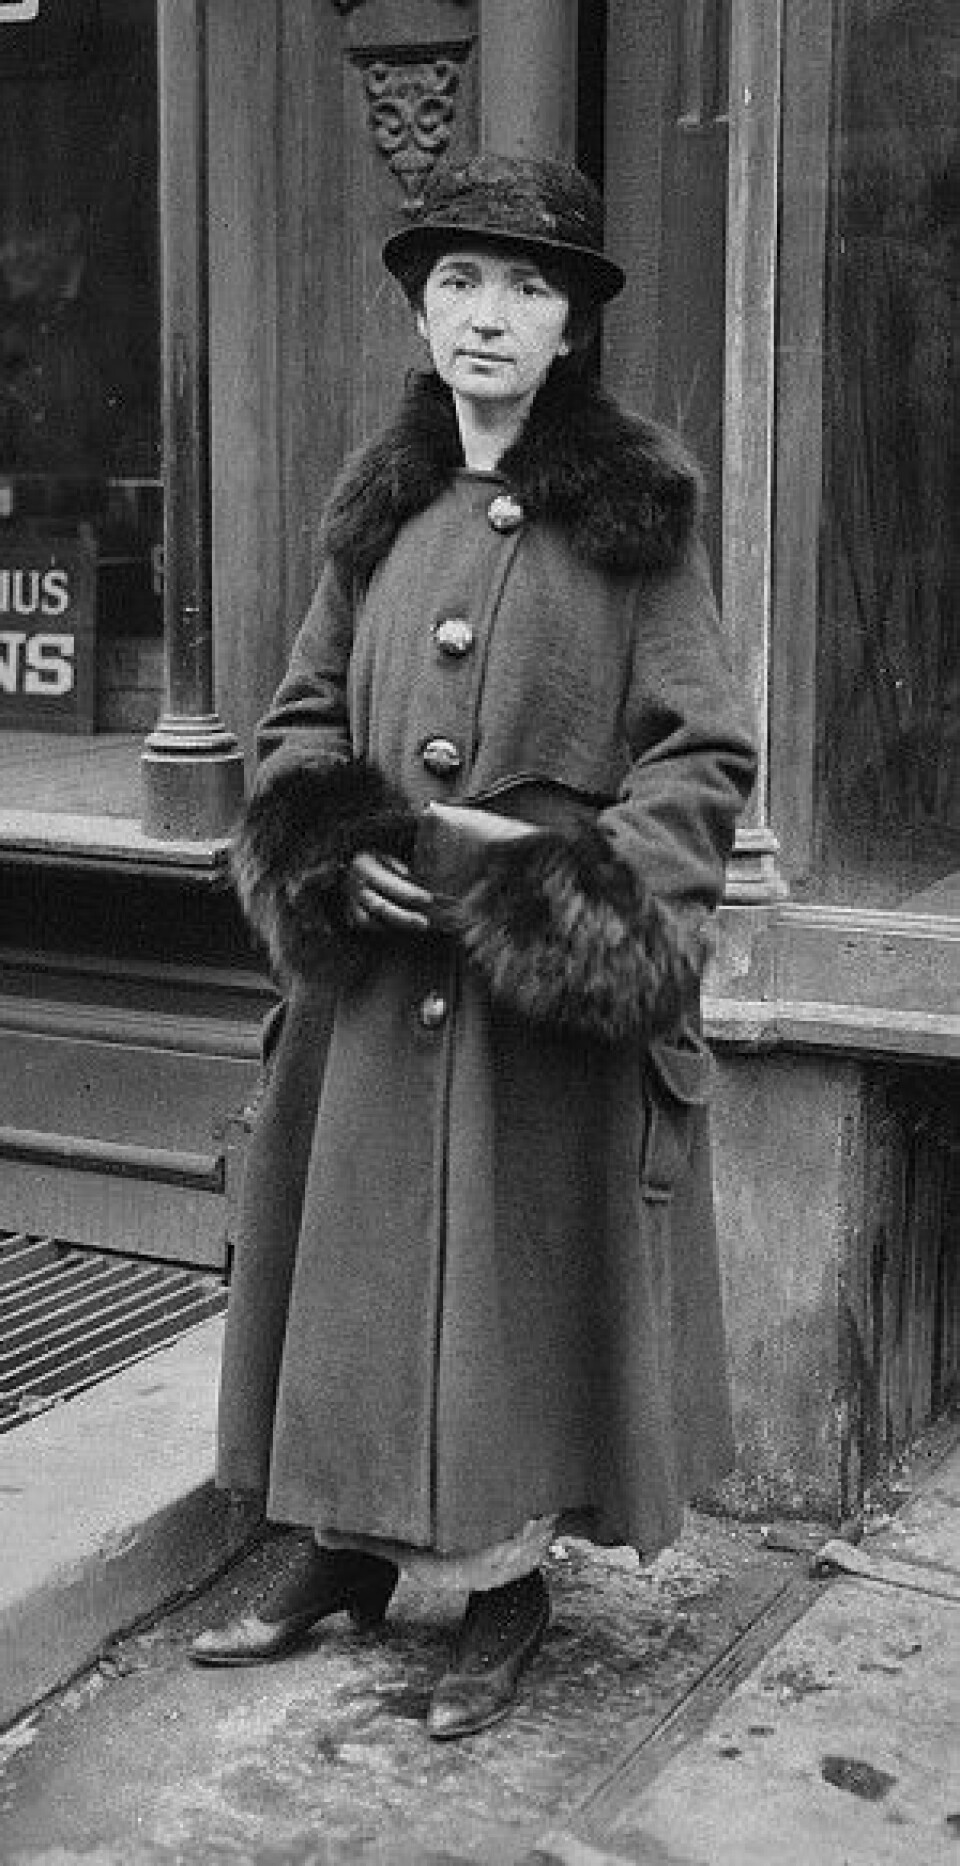 Margaret Sanger var kvinnesakskvinne og sykepleier. Her er hun fotografert under rettssakenmot prevensjonsklinikken Brownsville clinic i New York i 1917. (Foto: Wikimedia Commons)